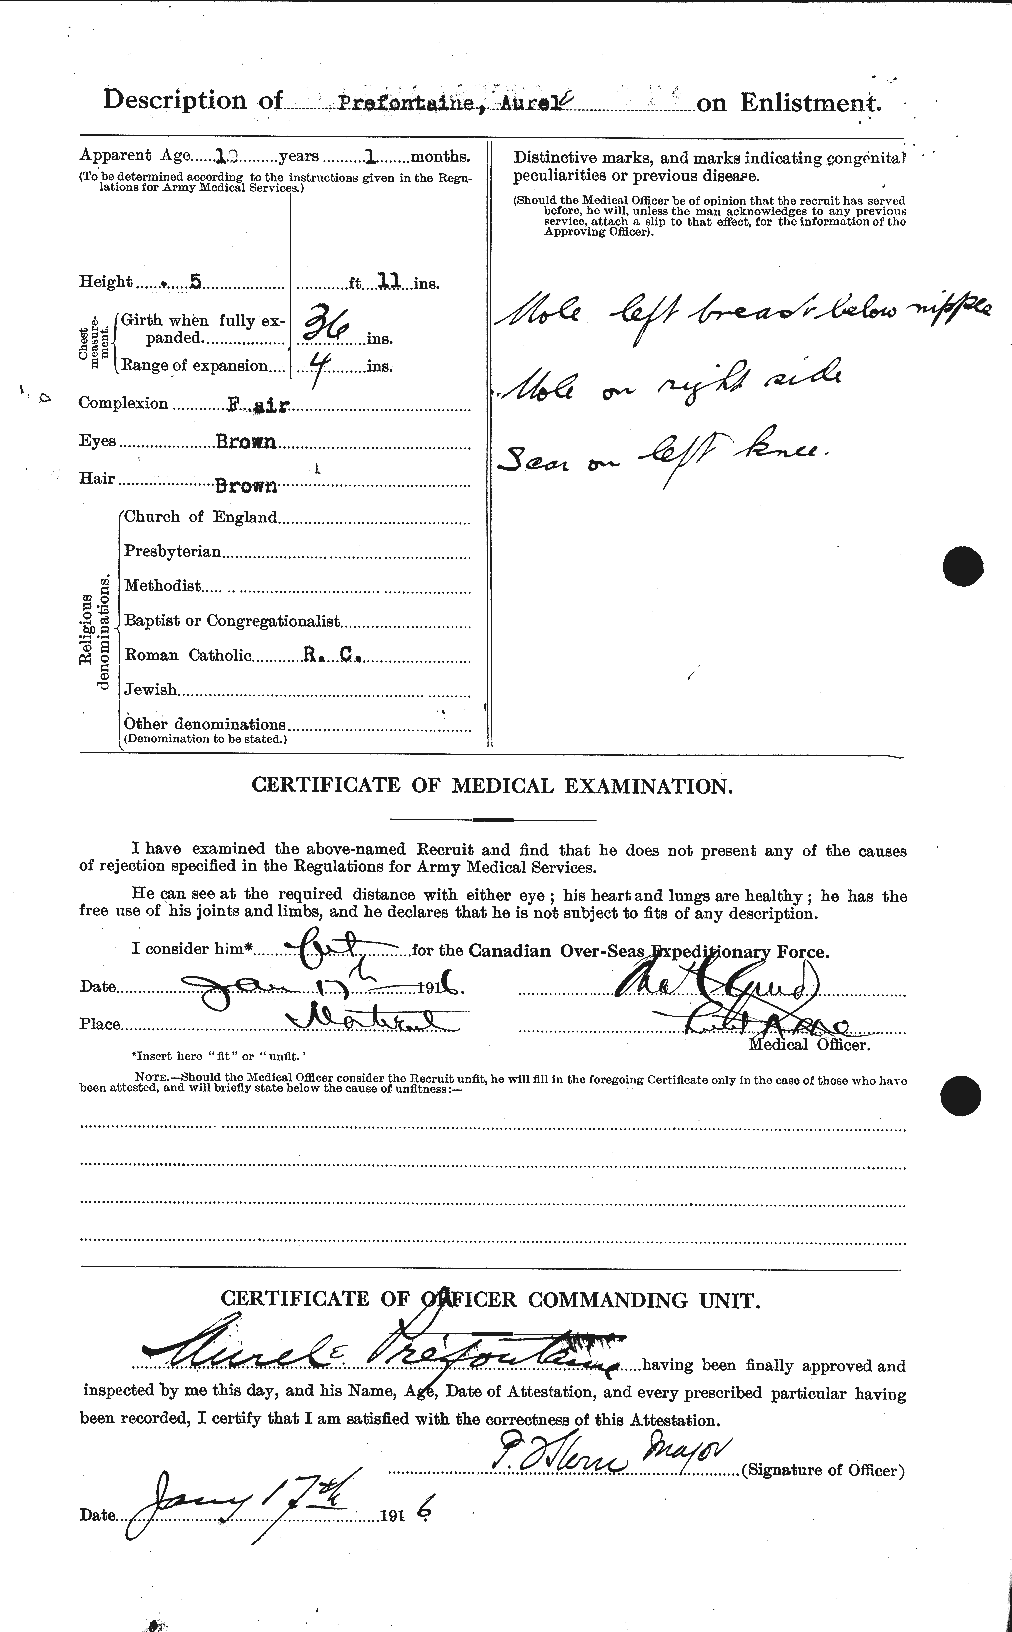 Dossiers du Personnel de la Première Guerre mondiale - CEC 588398b